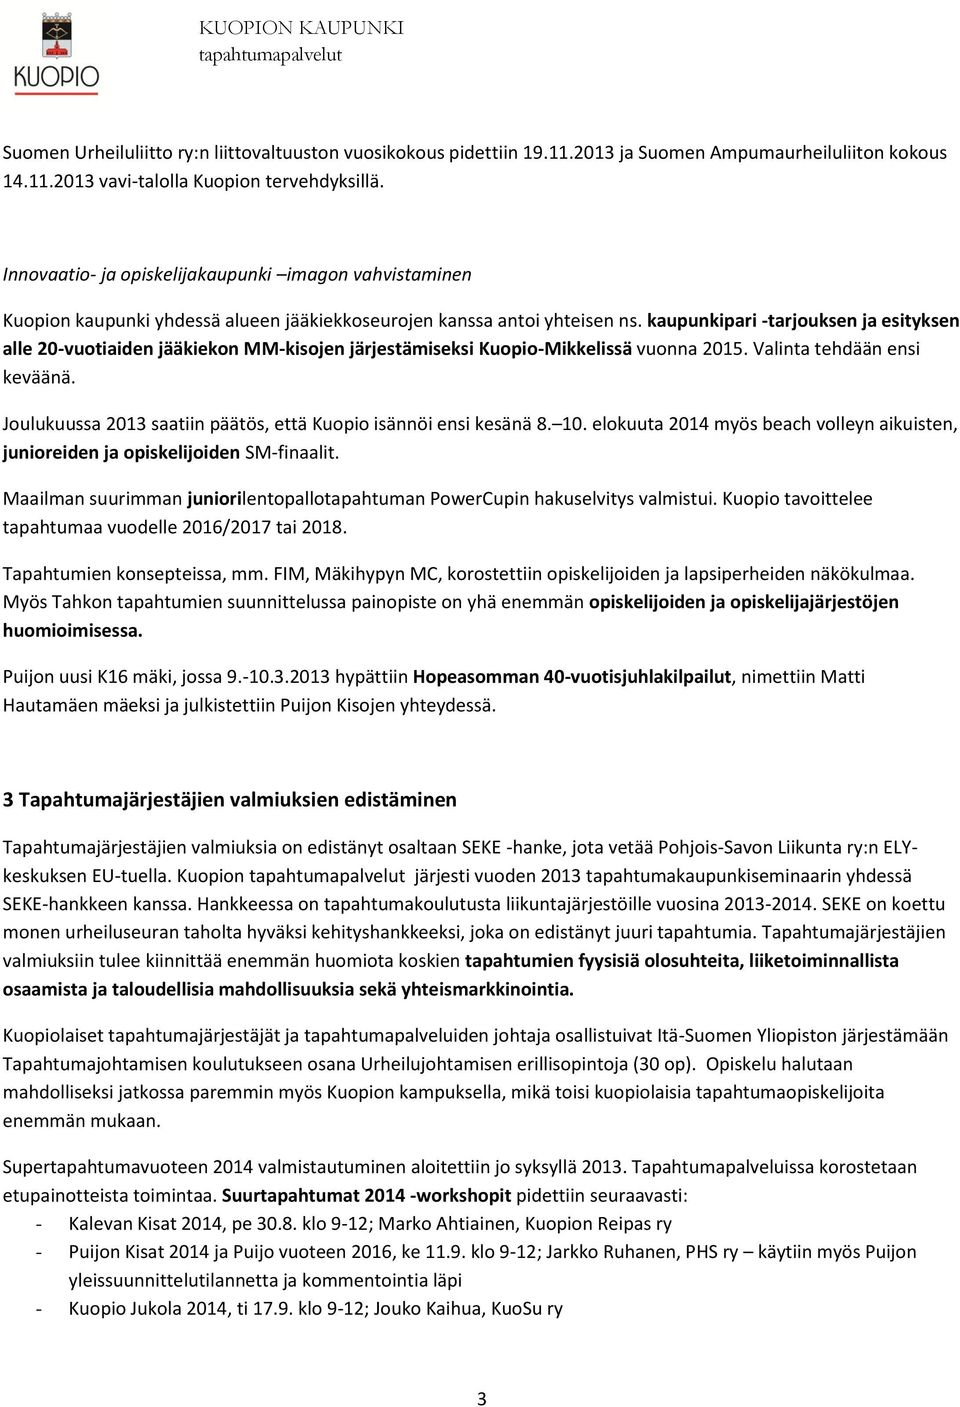 kaupunkipari -tarjouksen ja esityksen alle 20-vuotiaiden jääkiekon MM-kisojen järjestämiseksi Kuopio-Mikkelissä vuonna 2015. Valinta tehdään ensi keväänä.